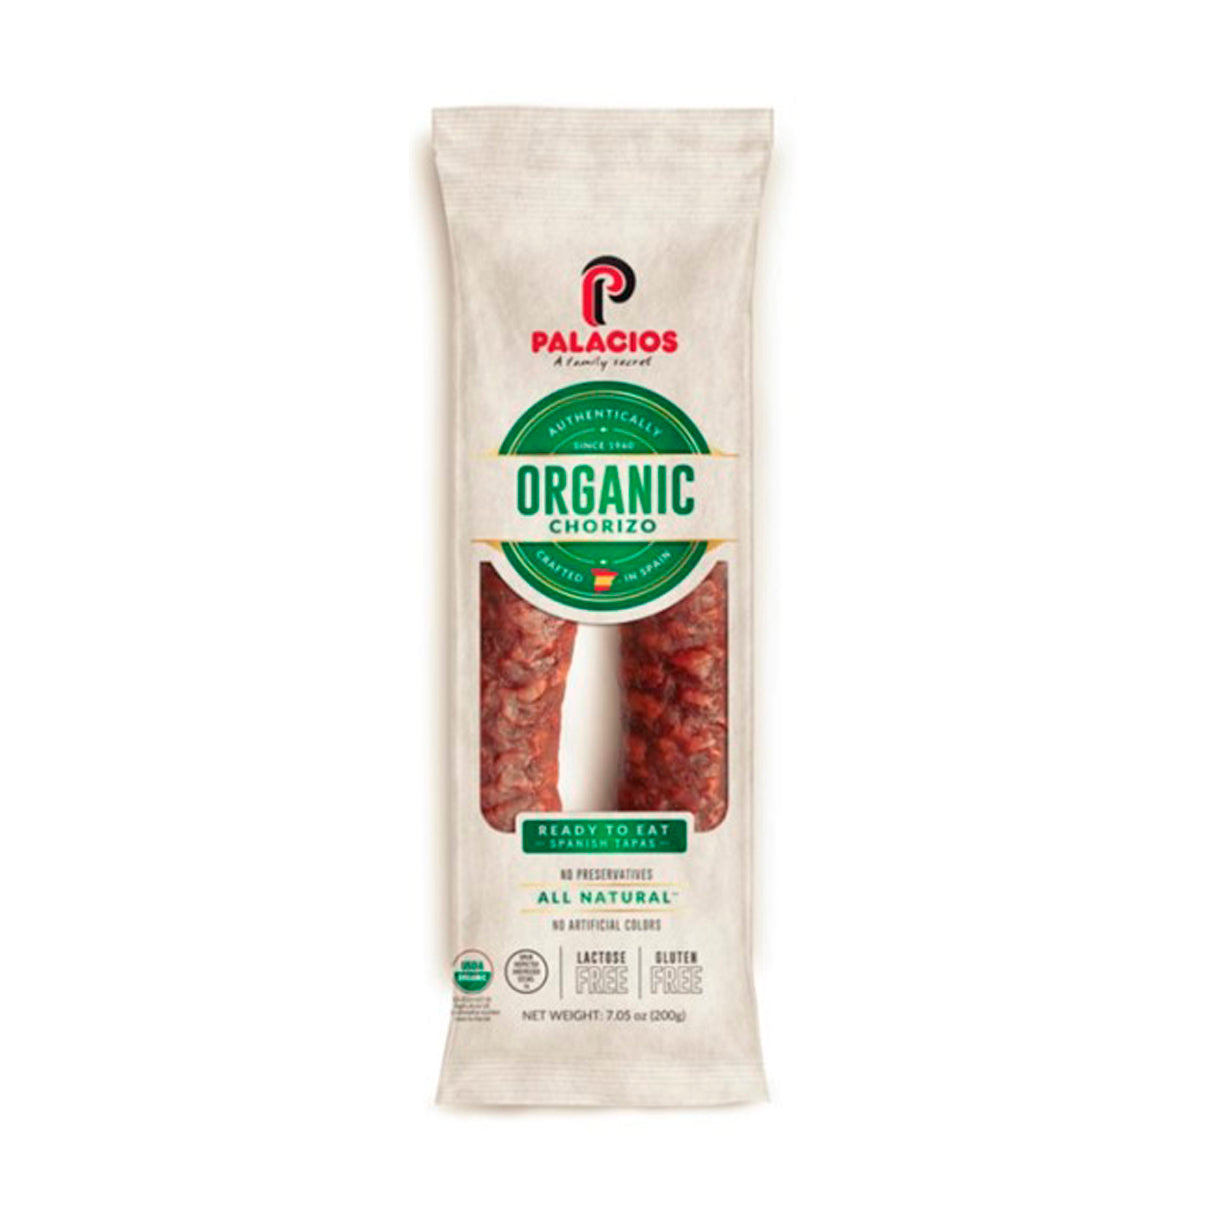 Palacios Organic Chorizo